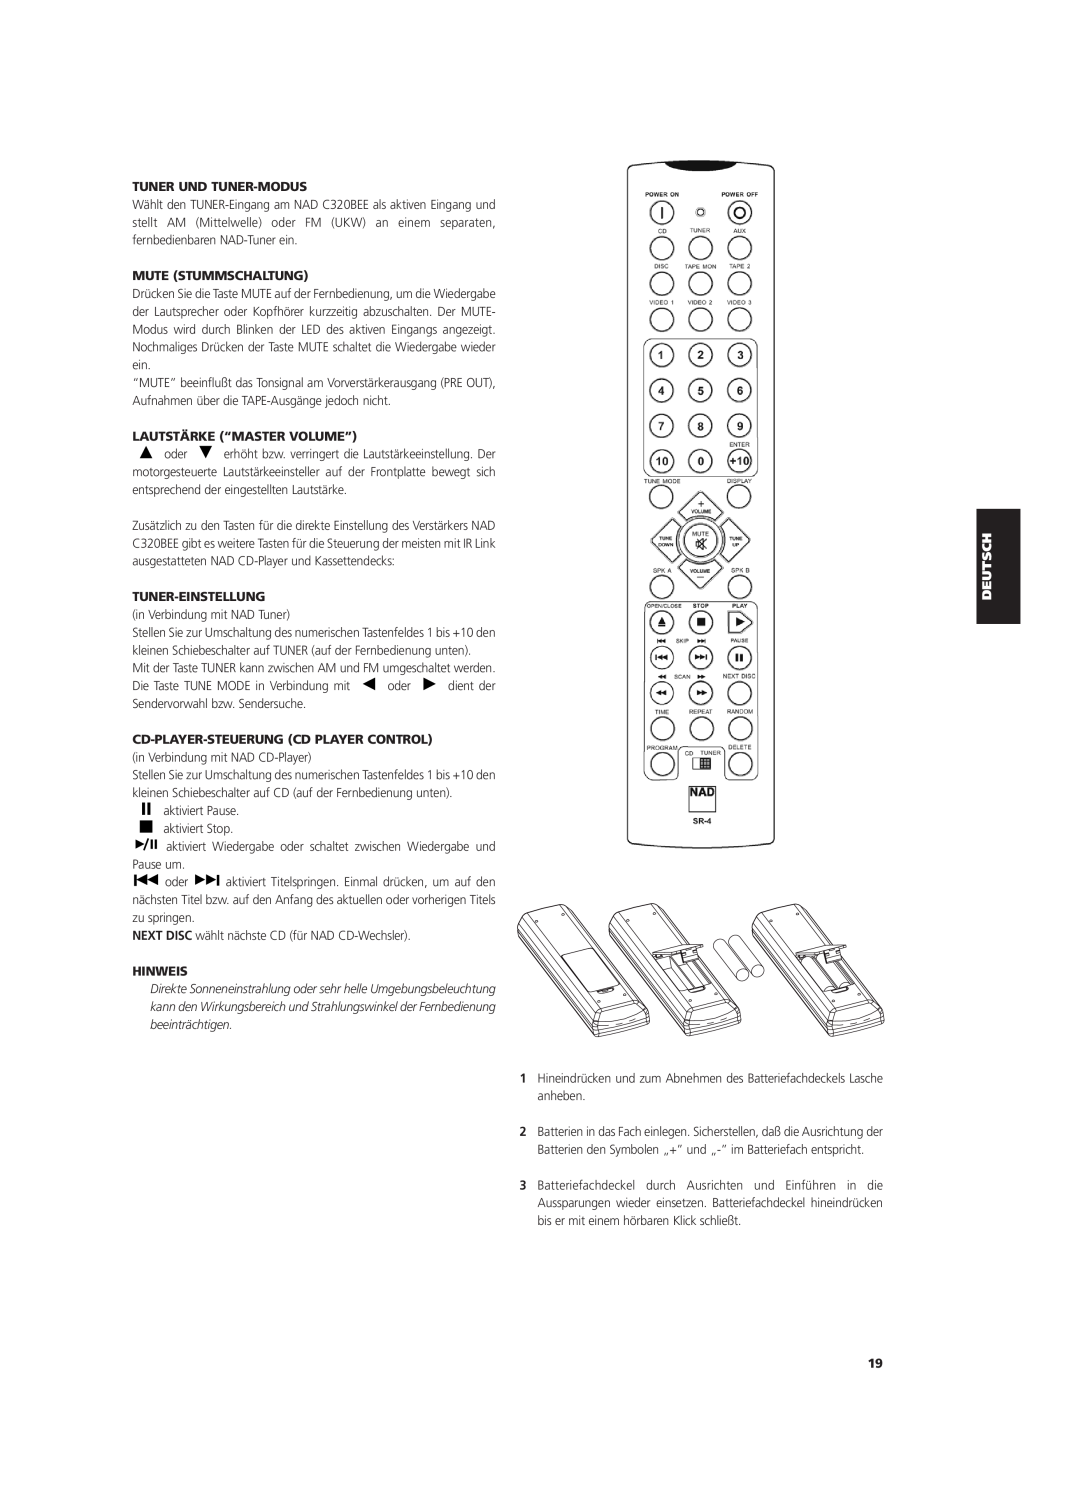 NAD C320BEE owner manual Tuner Und Tuner-Modus, Mute Stummschaltung, Lautstärke “Master Volume”, Tuner-Einstellung, Hinweis 